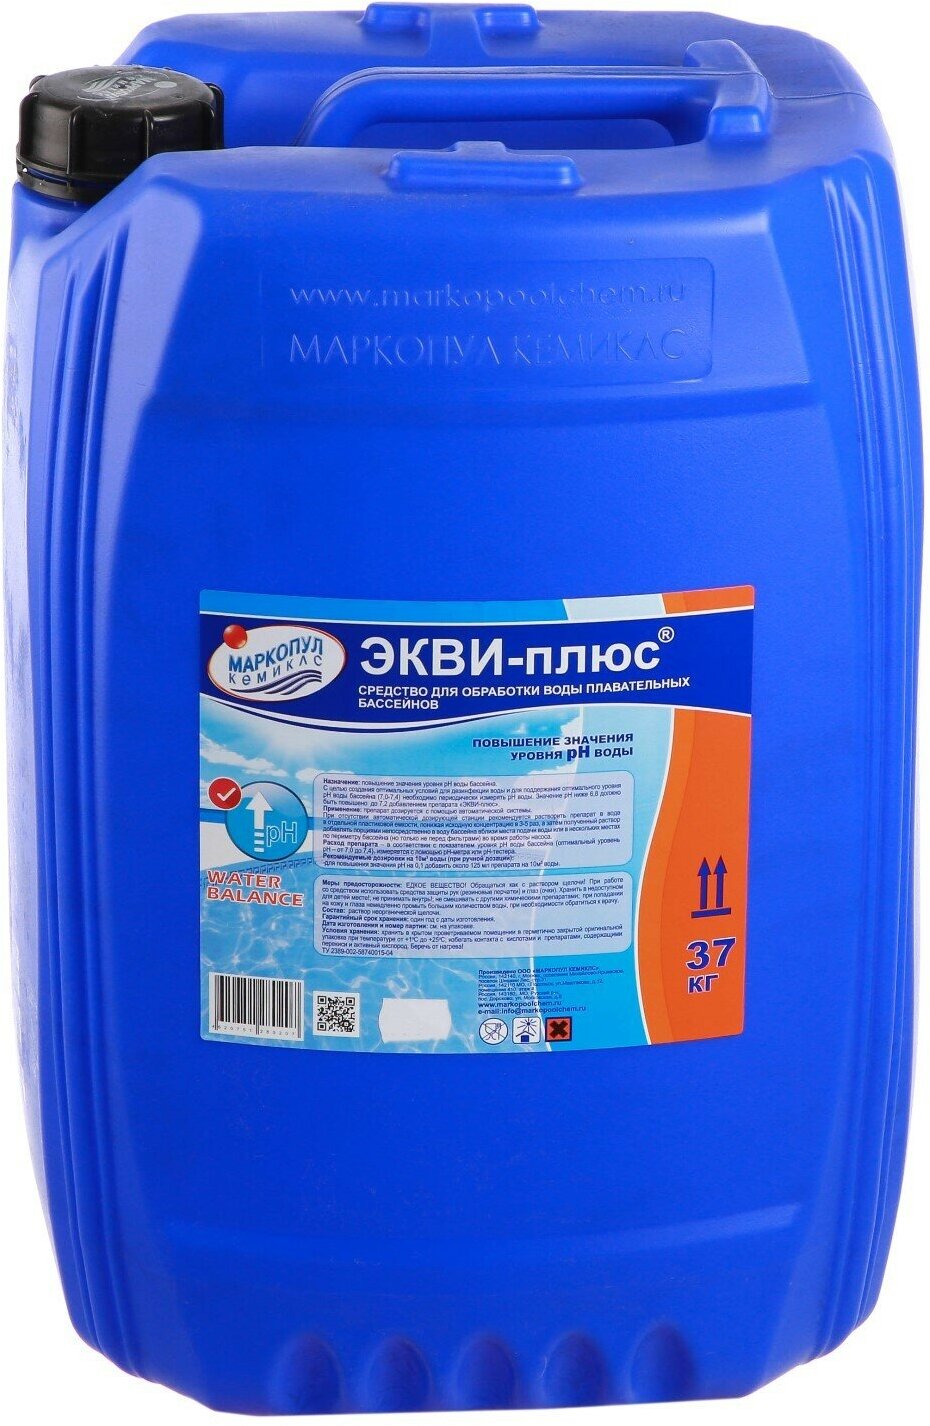 Жидкость для понижения уровня рН воды Маркопул-Кемиклс Экви-Плюс 30L М79